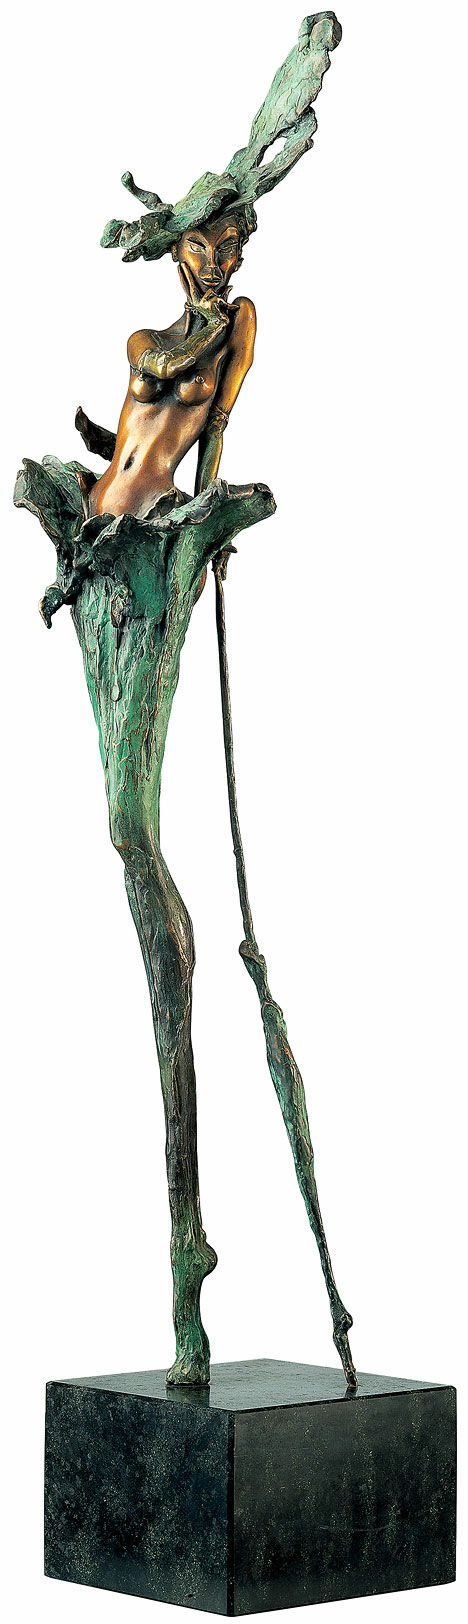 Skulptur "Når damen smiler" (1995), bronze von Marc van Megen